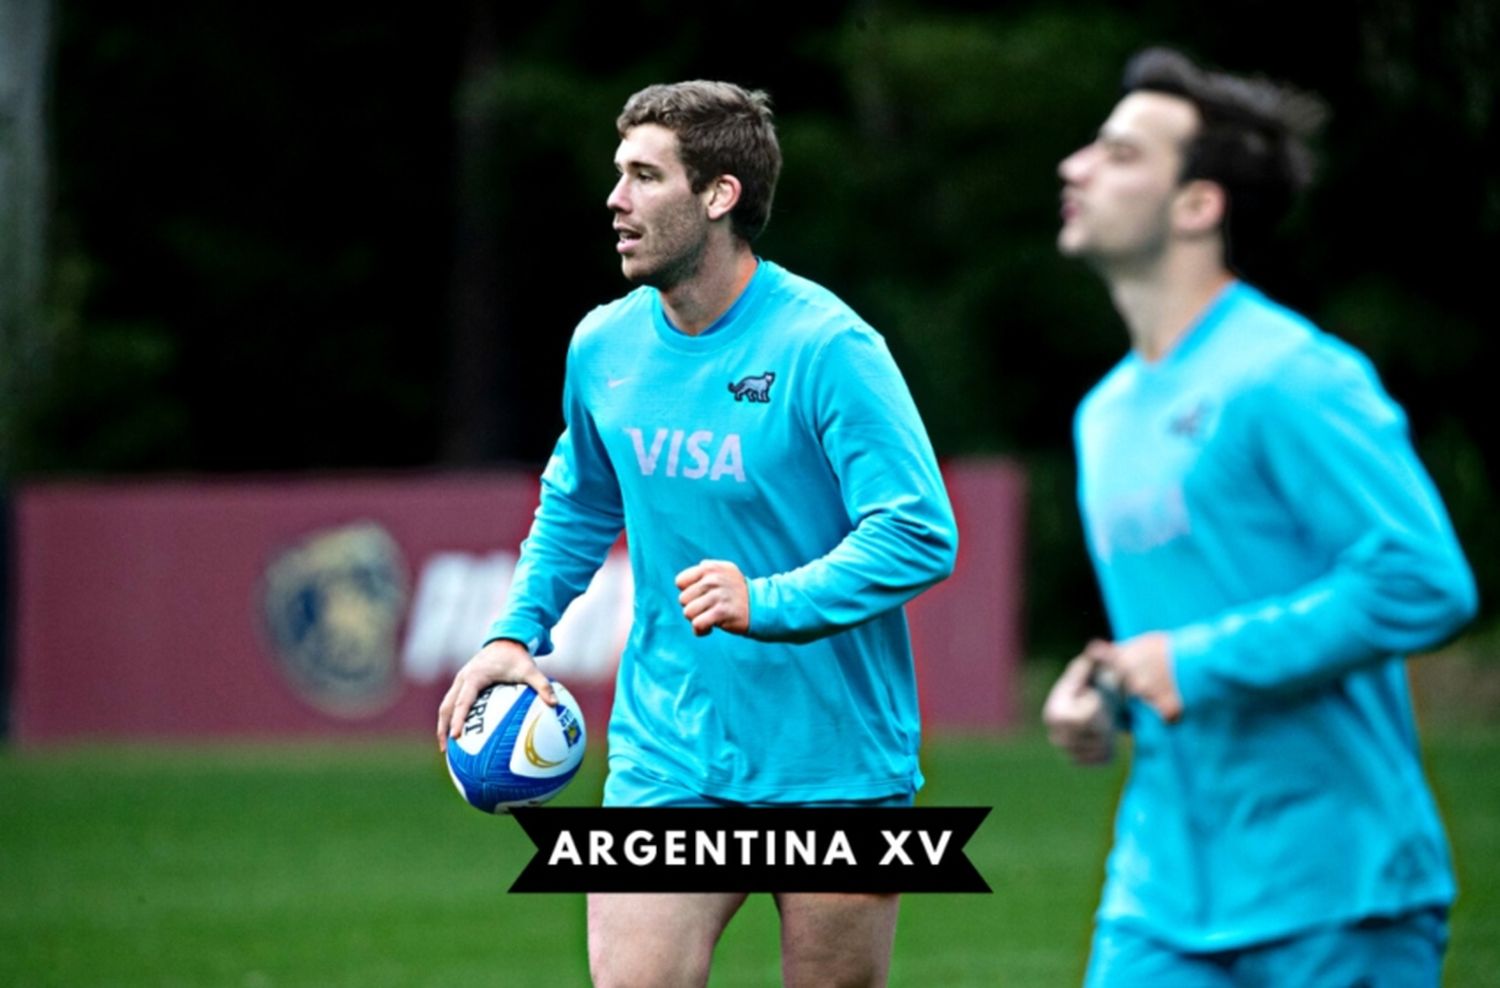 El marplatense Rodrigo Fernández Criado fue convocado a la Selección de Argentina XV